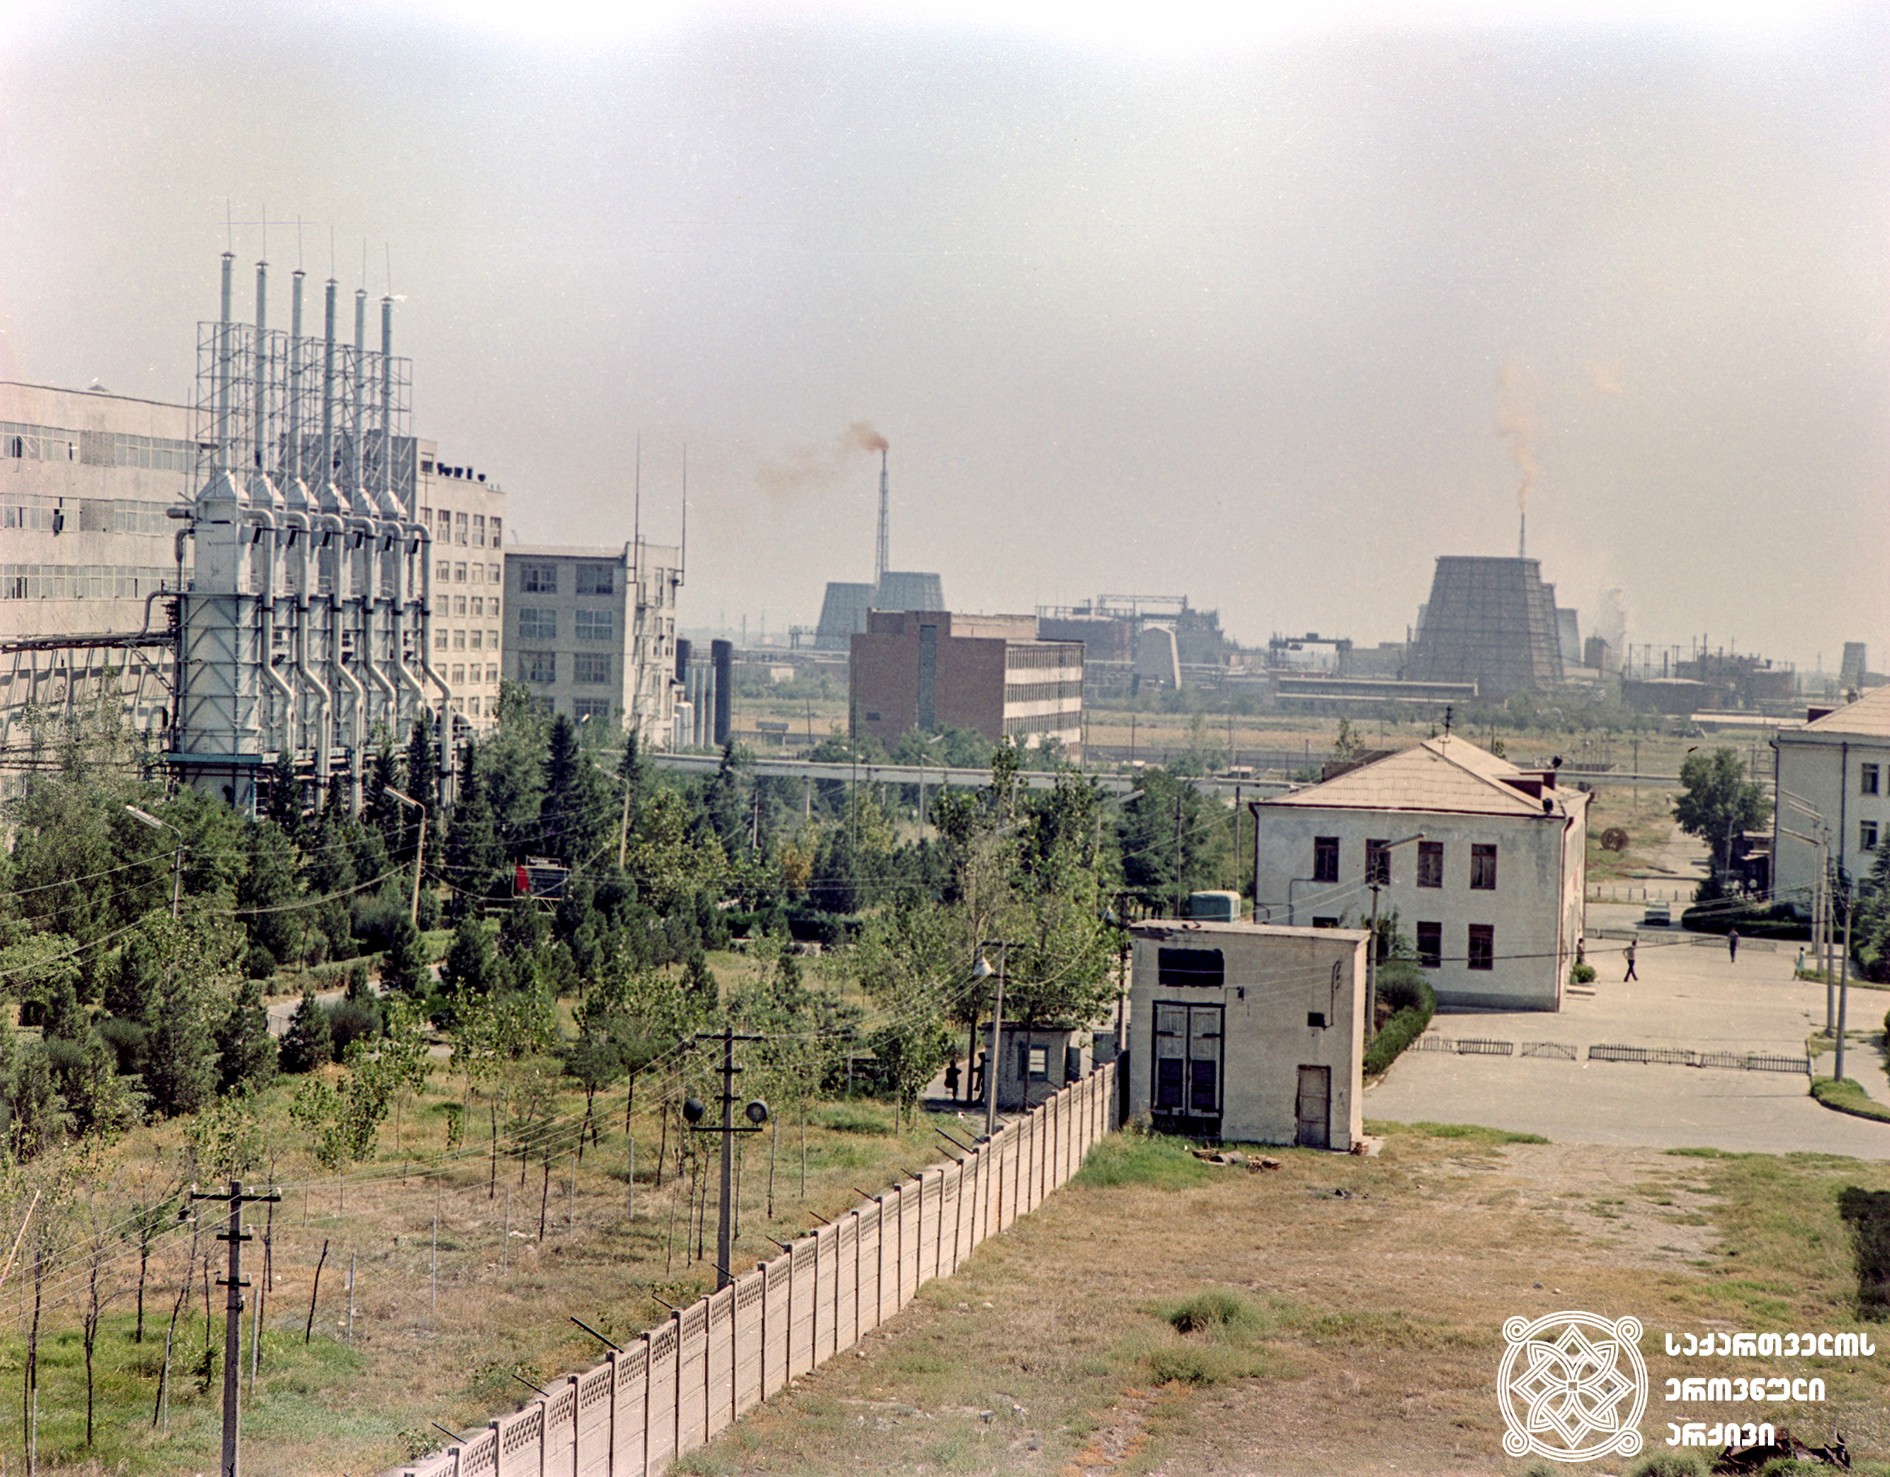 რუსთავის ქიმკომბინატი. 1971 წელი.
<br>
Rustavi chemical factory complex. 1971.